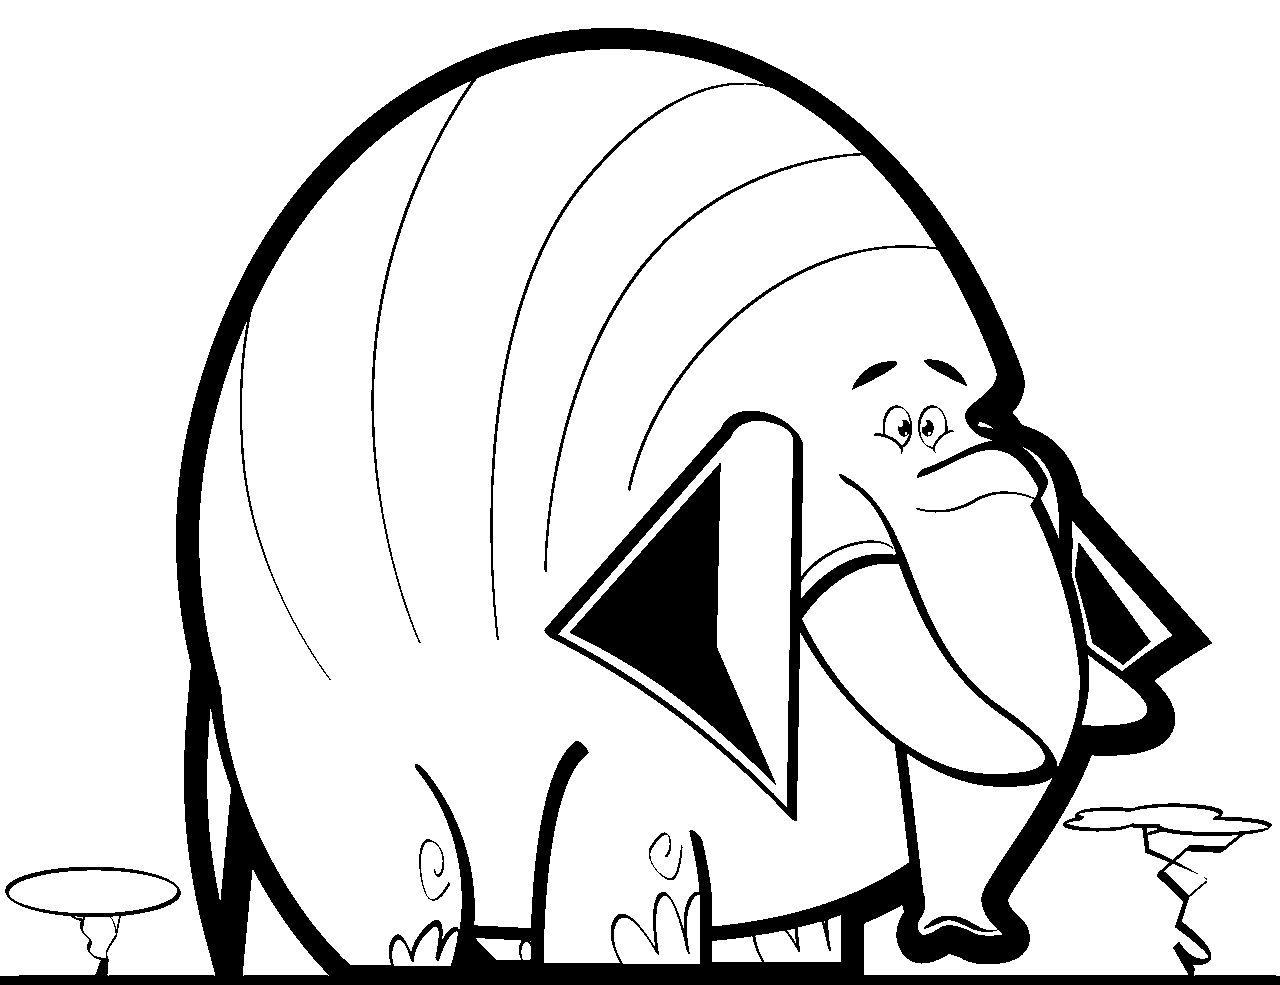 Página para colorear de elefante divertido estilo de dibujos animados